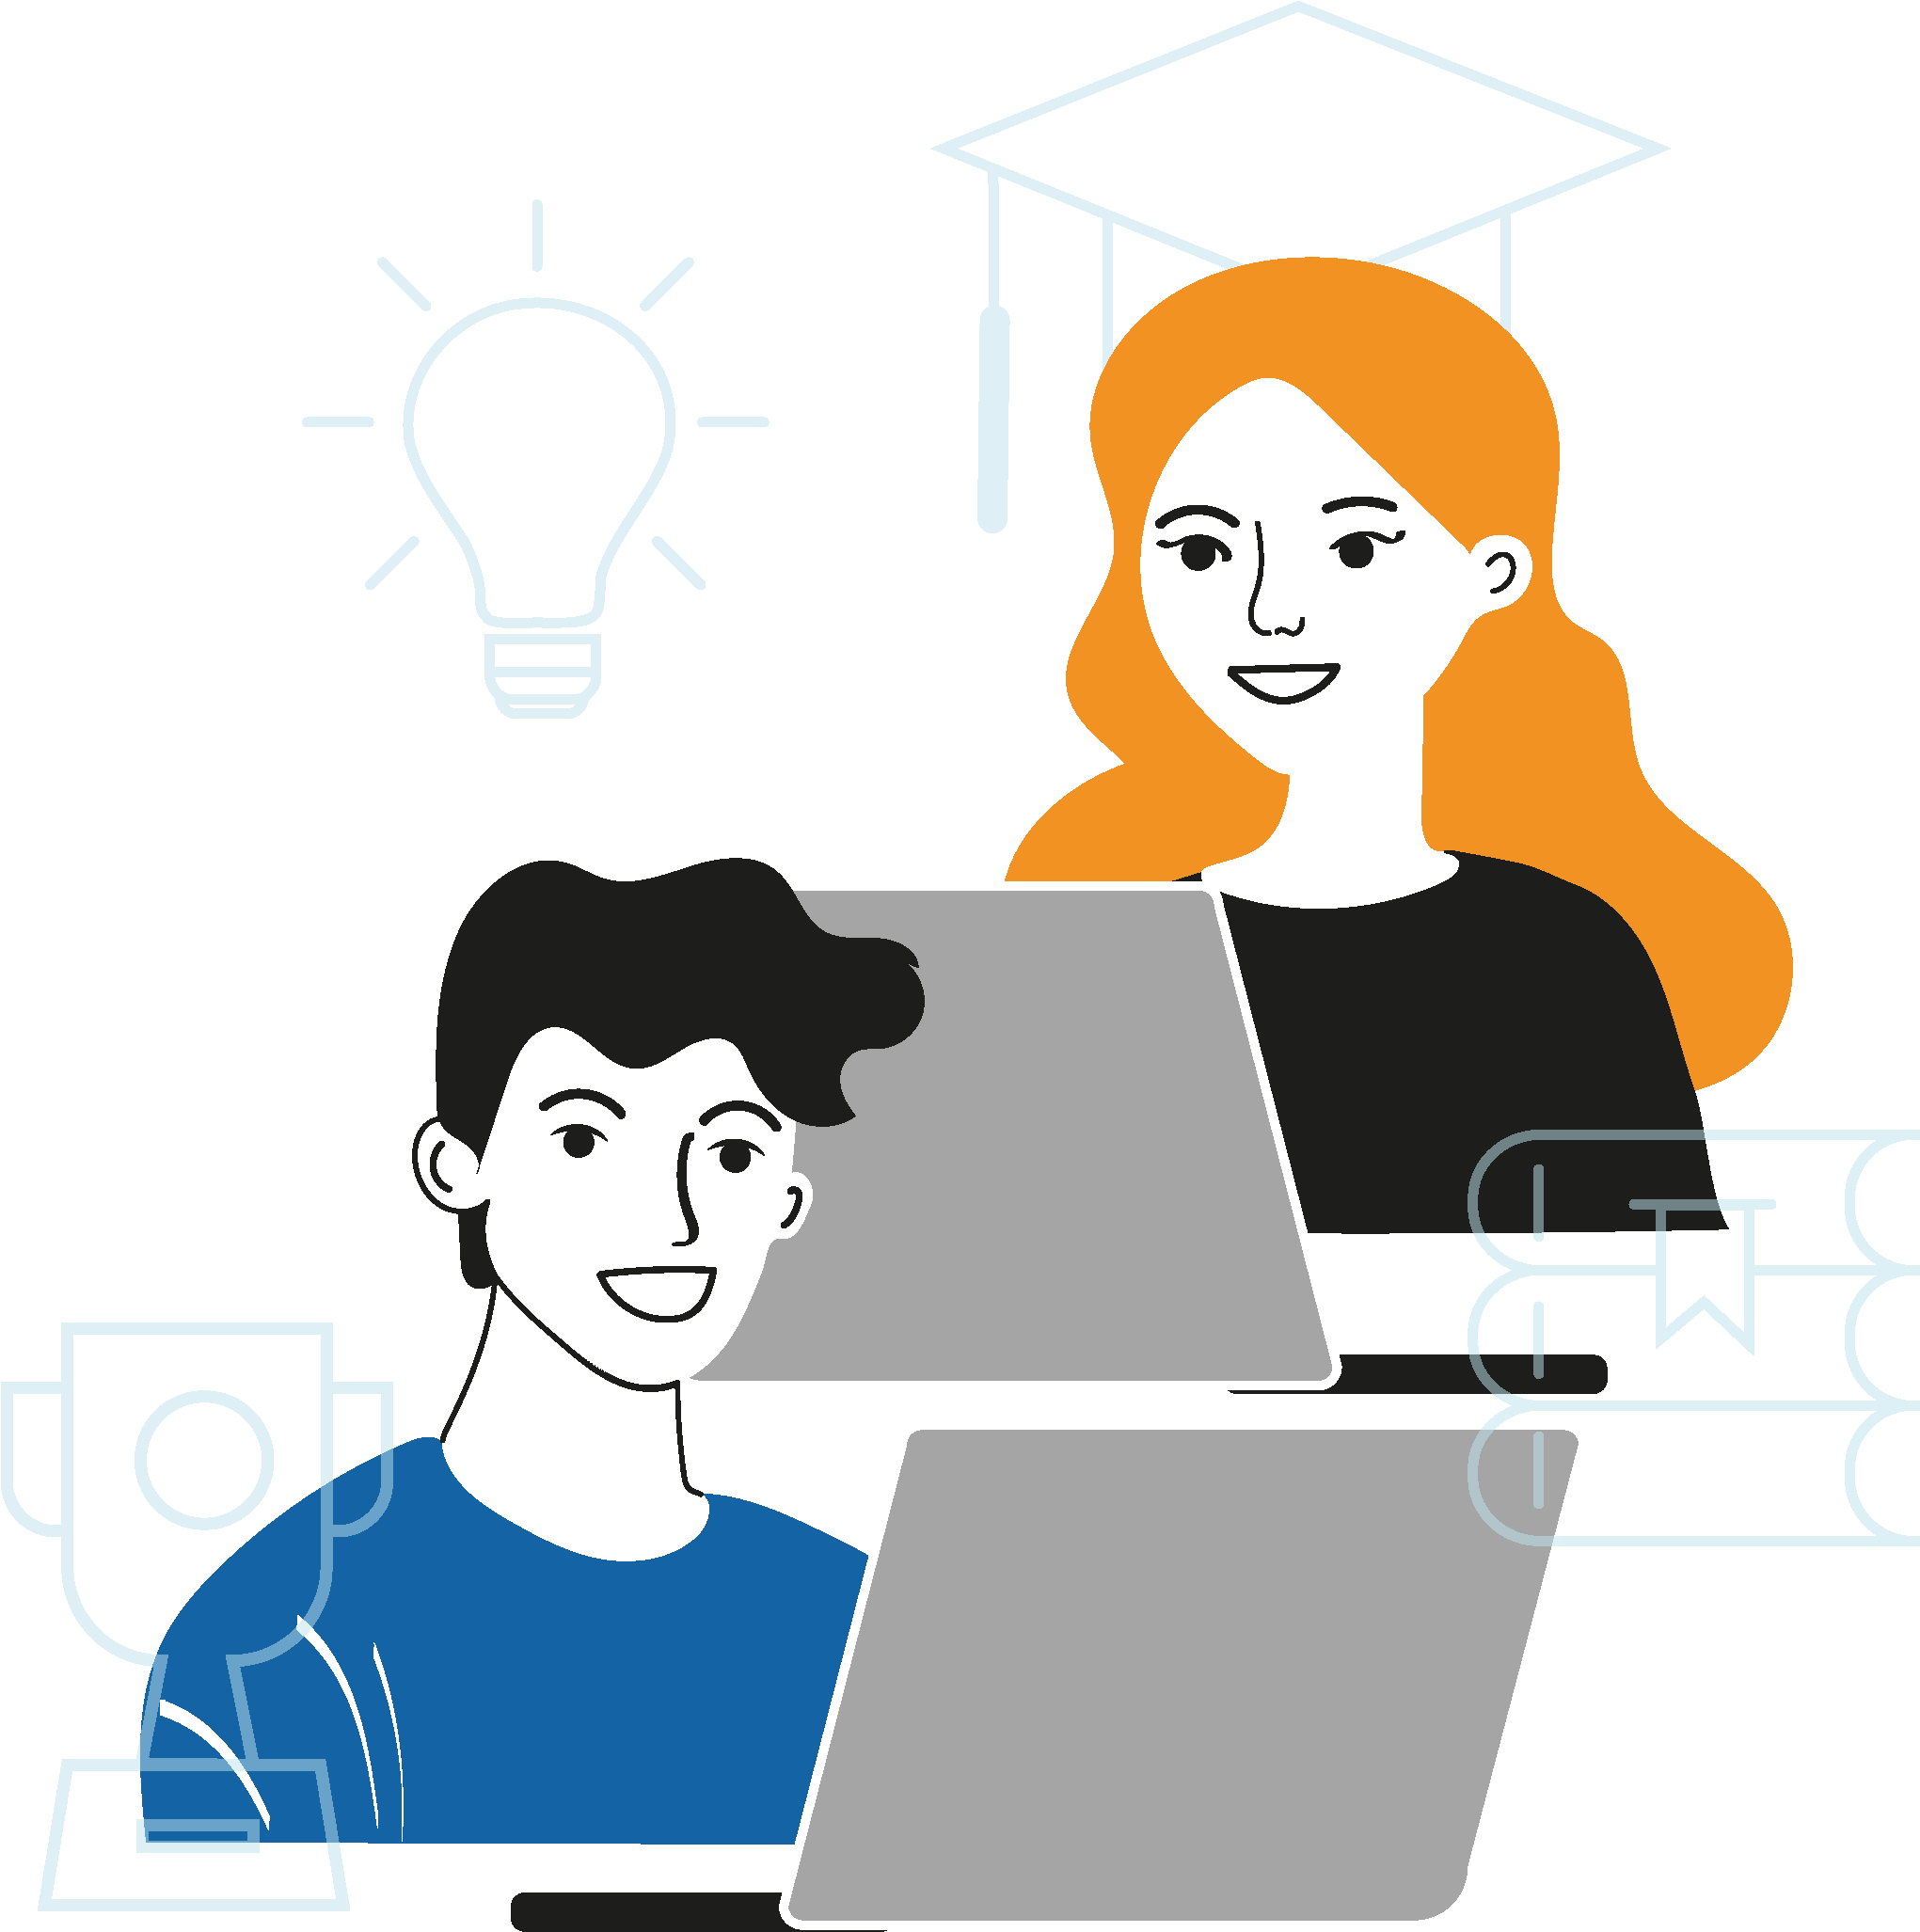 Zwei Student:innen arbeiten an Laptops, umgeben von virtuellen Symbolen für Bildung und Karriere, wie Bücher, Doktorhut und Pokal